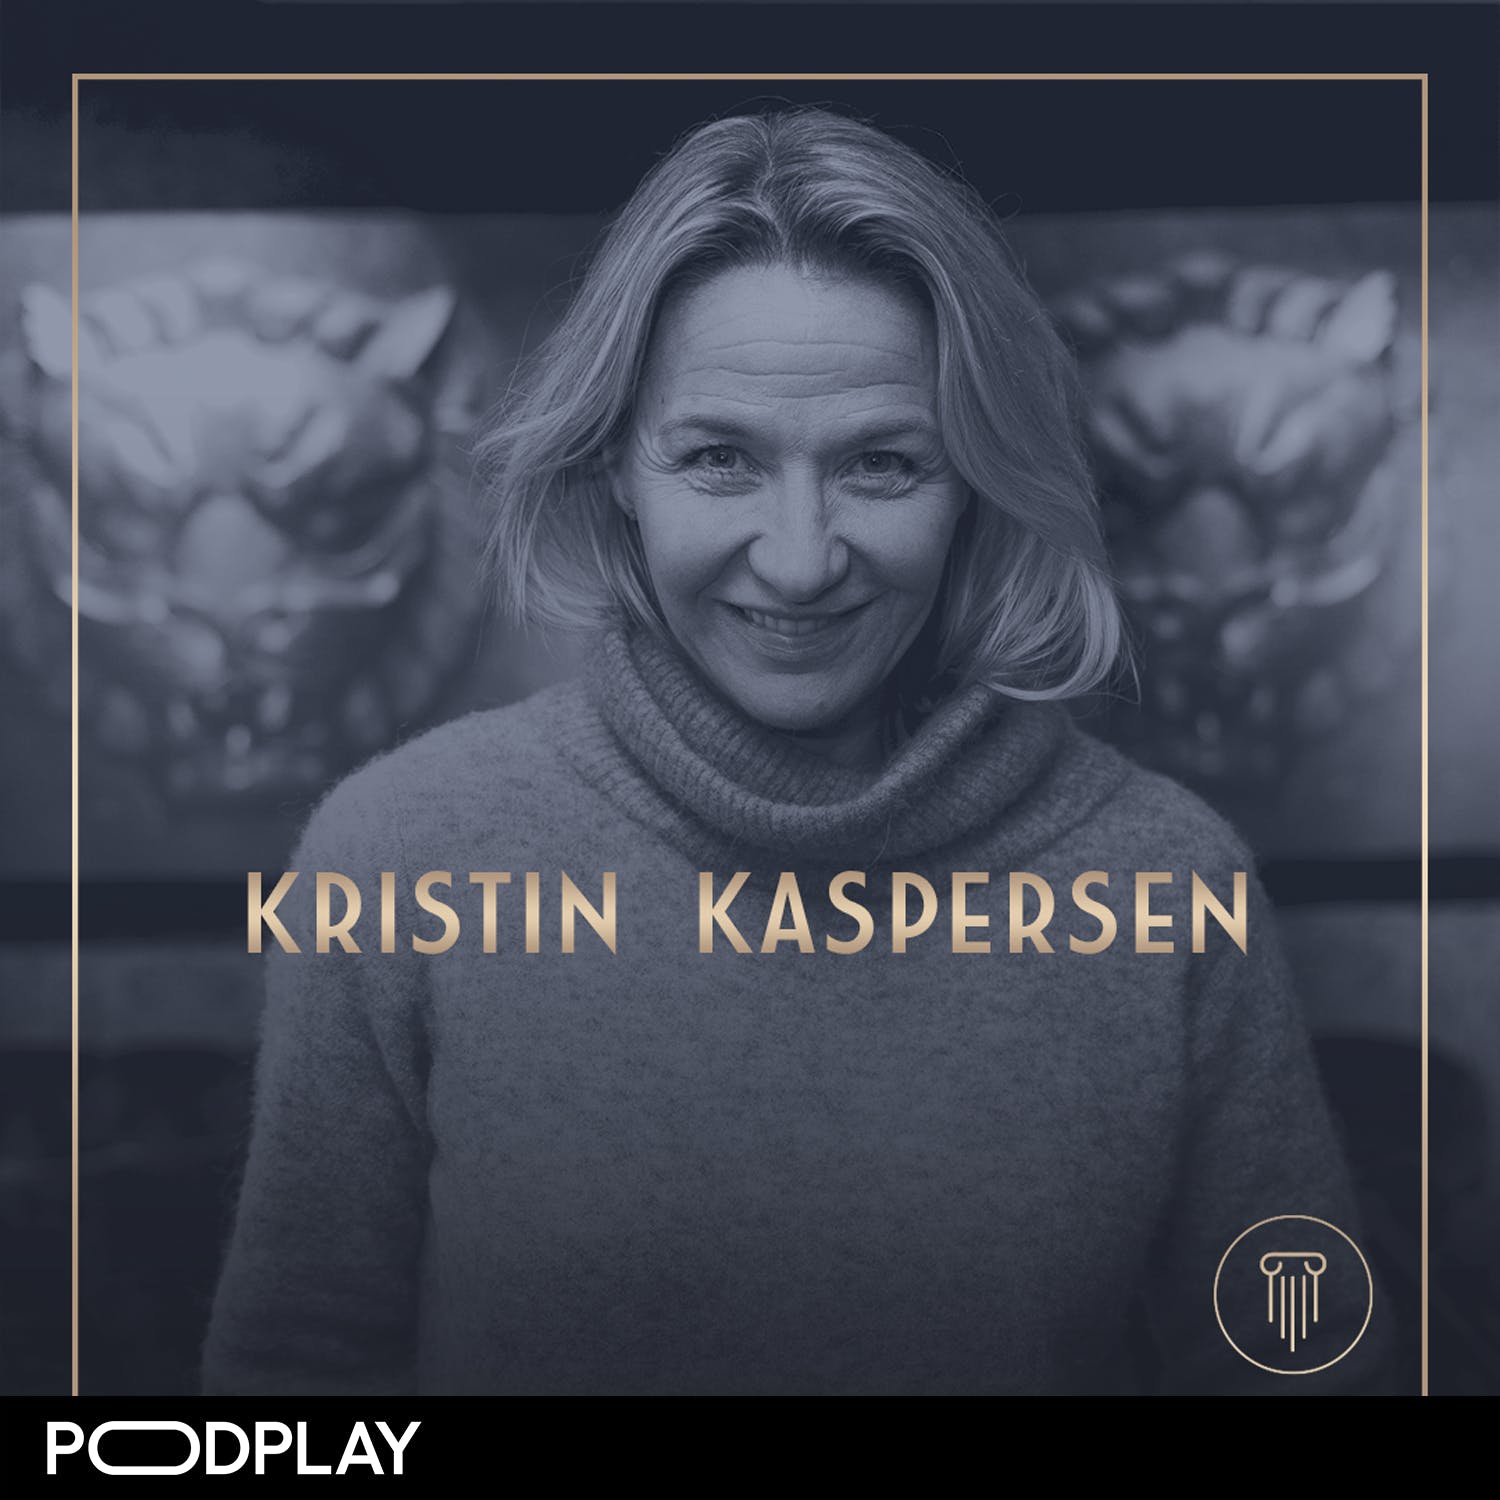 344. Kristin Kaspersen - Våga kommunicera det du vill, Original